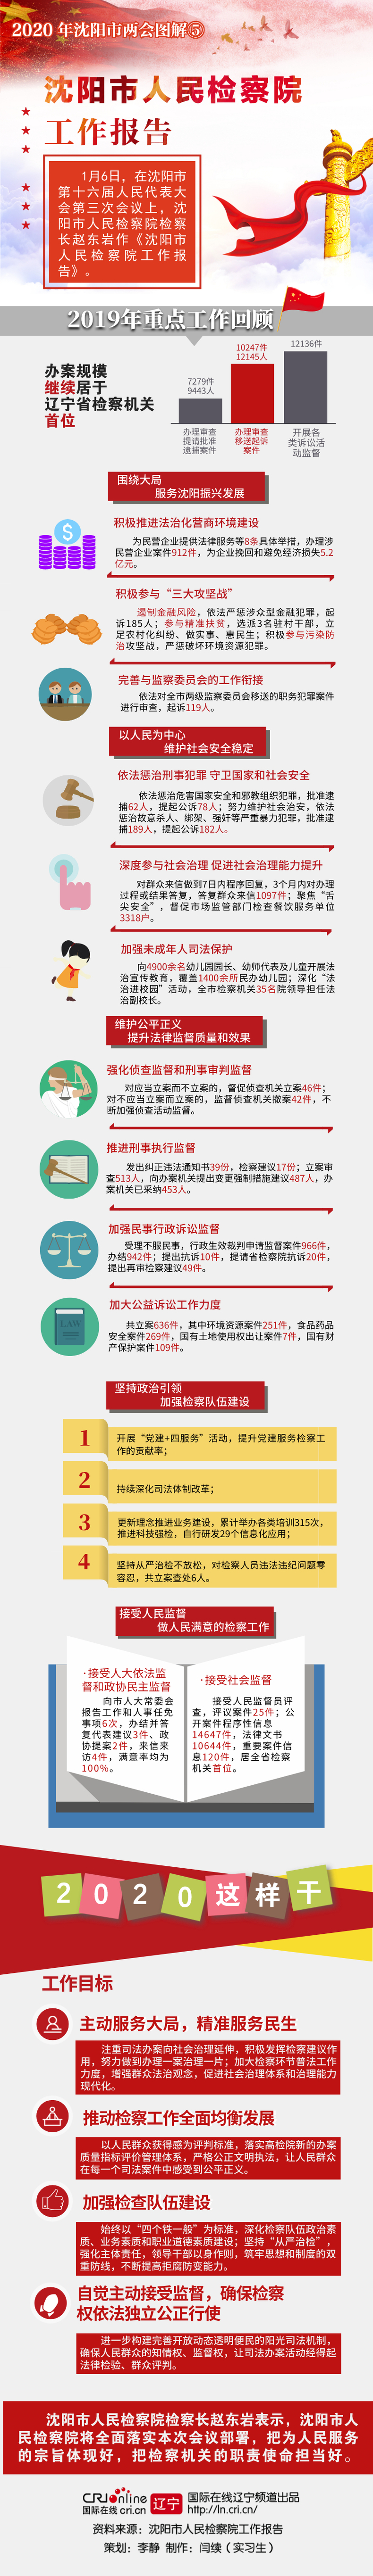 圖解|瀋陽市人民檢察院工作報告